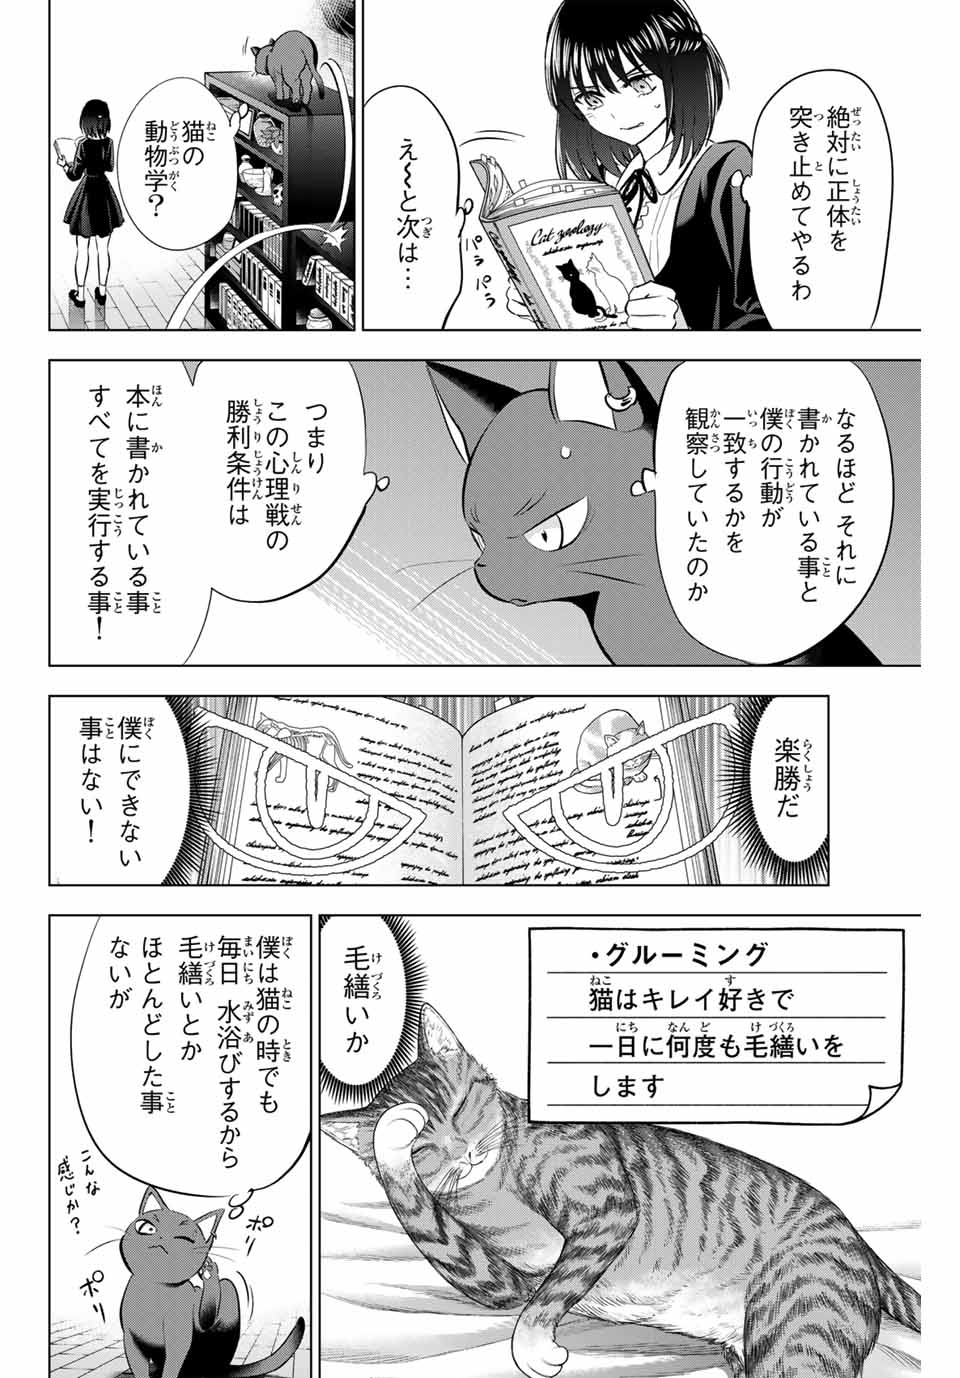 Kuroneko to Majo no Kyoushitsu - Chapter 61 - Page 14